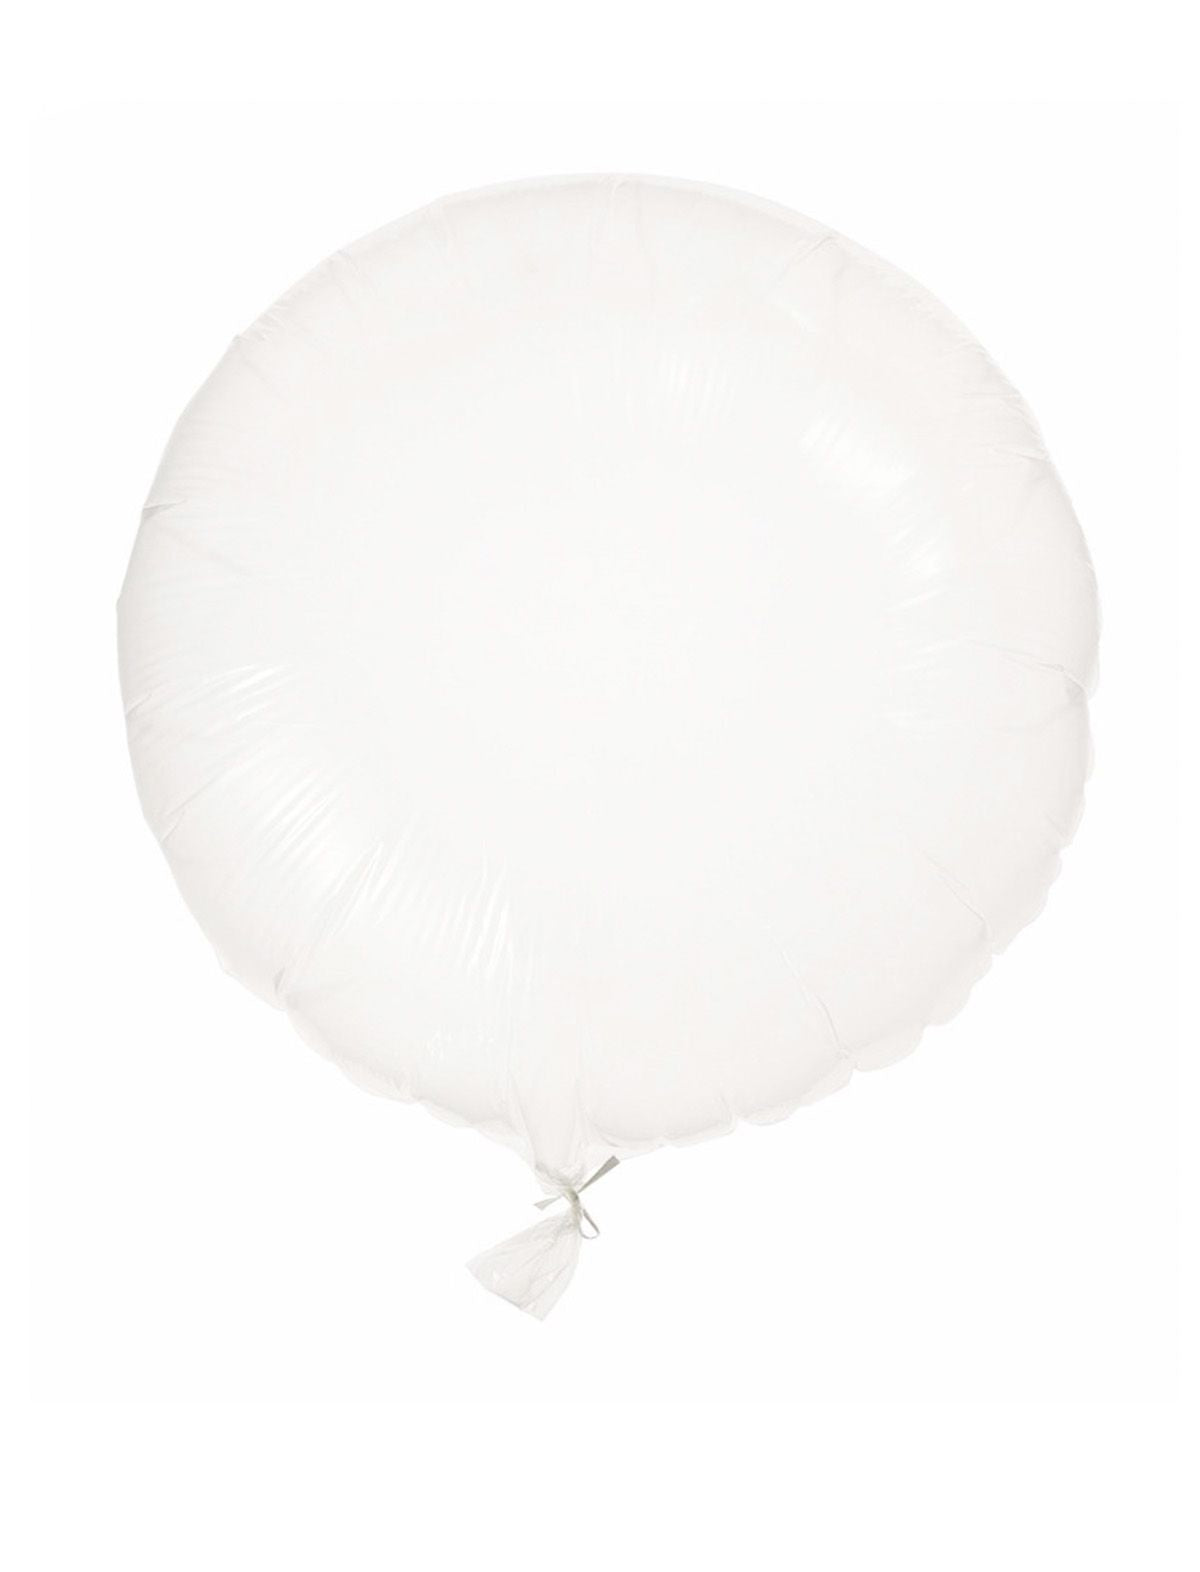 Leuke transparante folie ballon 60cm